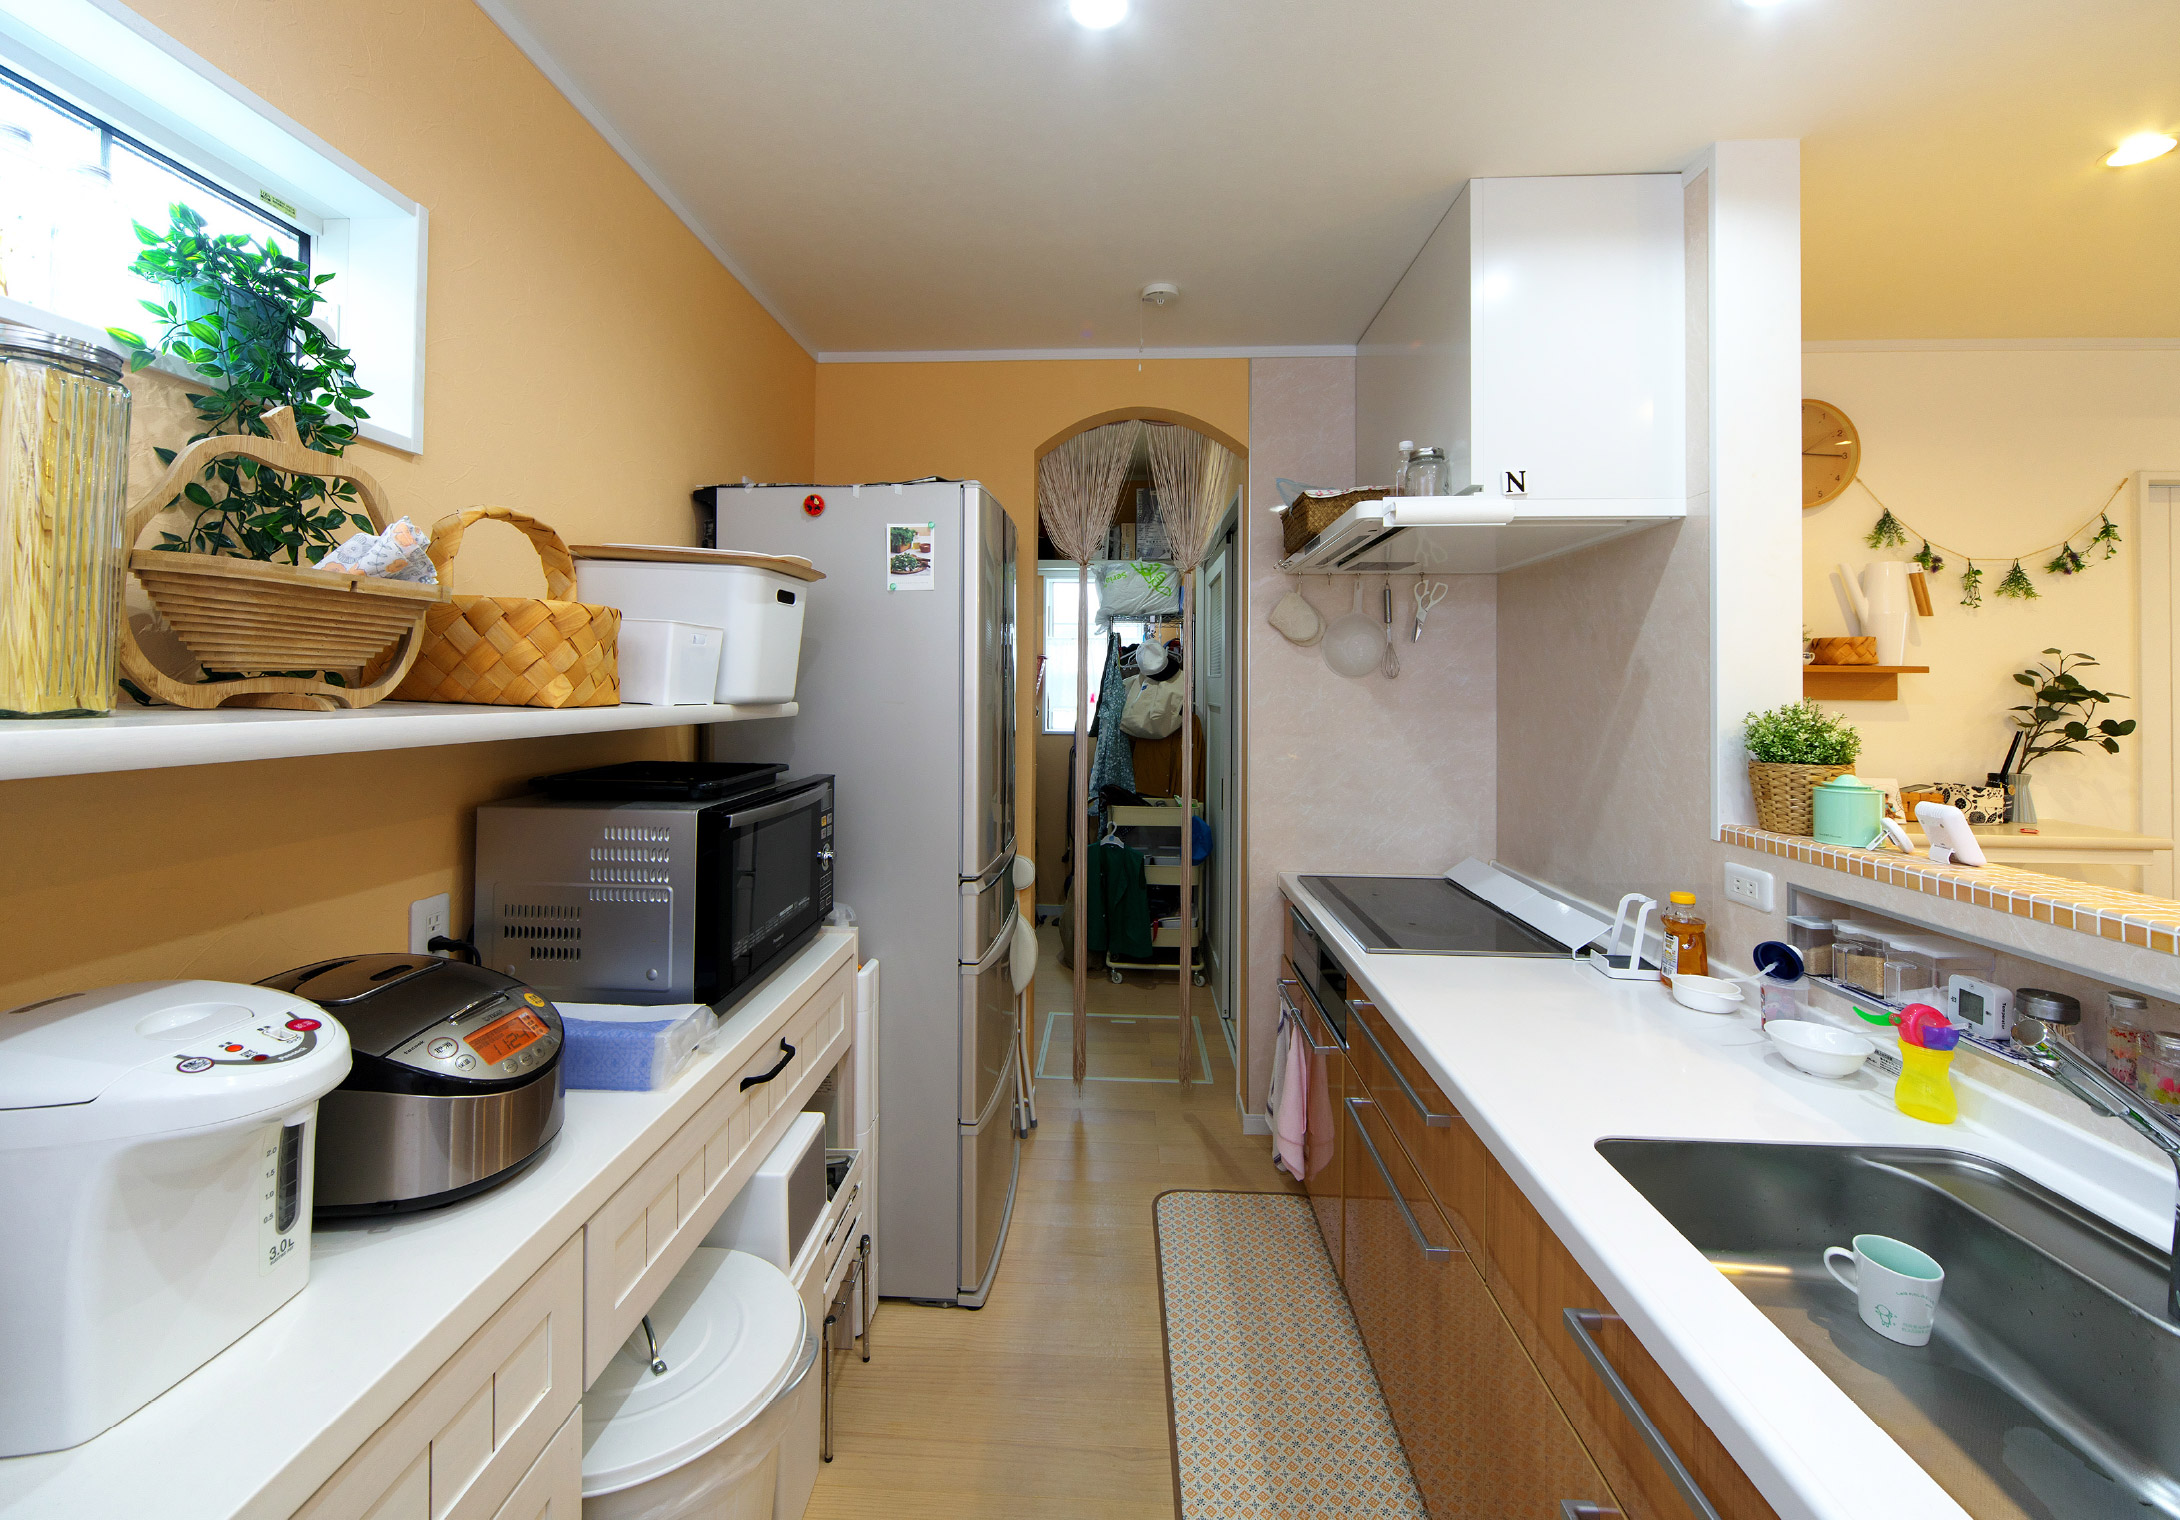 キッチンの奥には大容量のパントリーを設置。保存食品や調味料、洗剤などのストックに便利